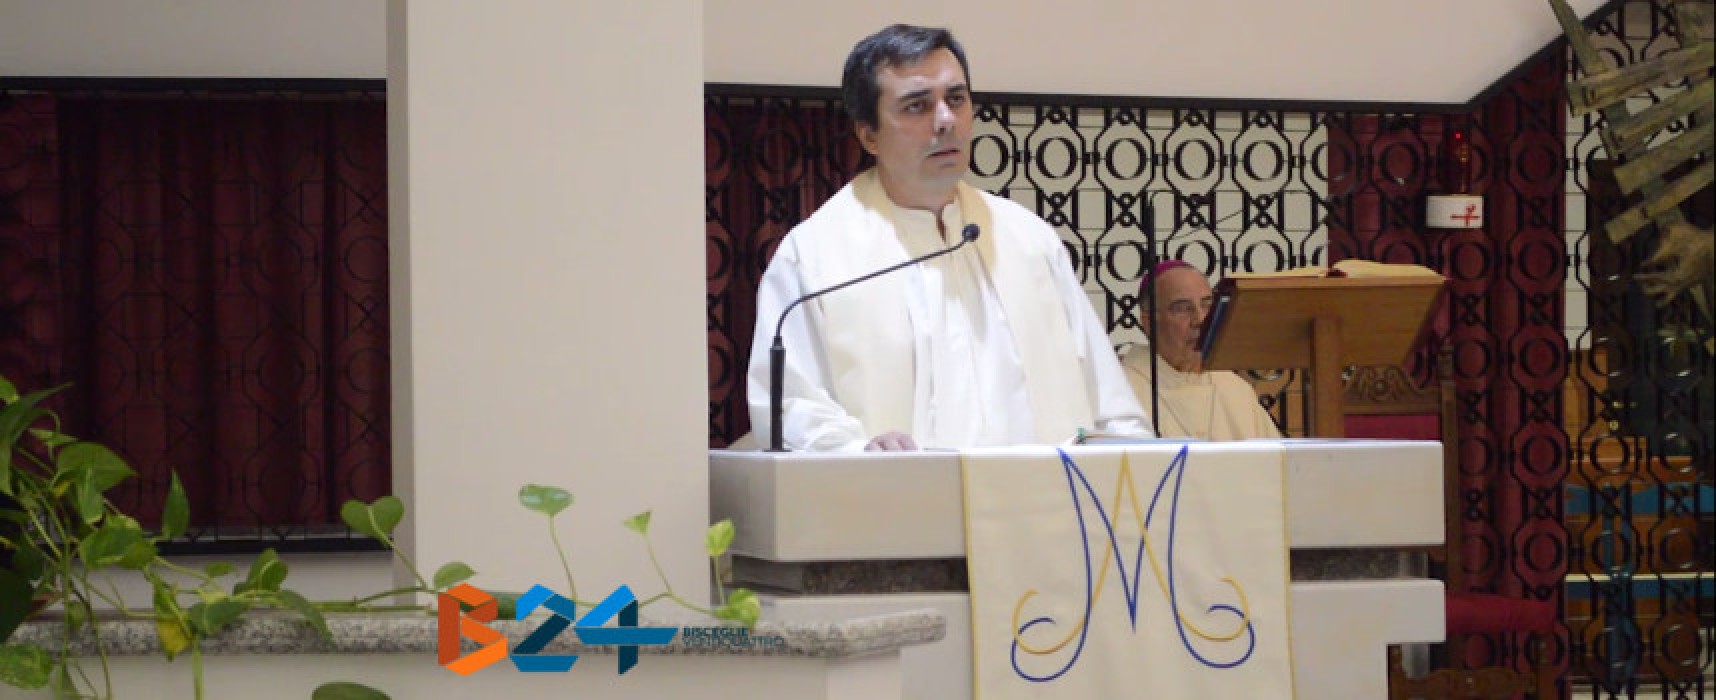 Padre Onofrio ai parrocchiani: “Non lasciamoci vincere dal male” / VIDEO INTEGRALE SALUTO